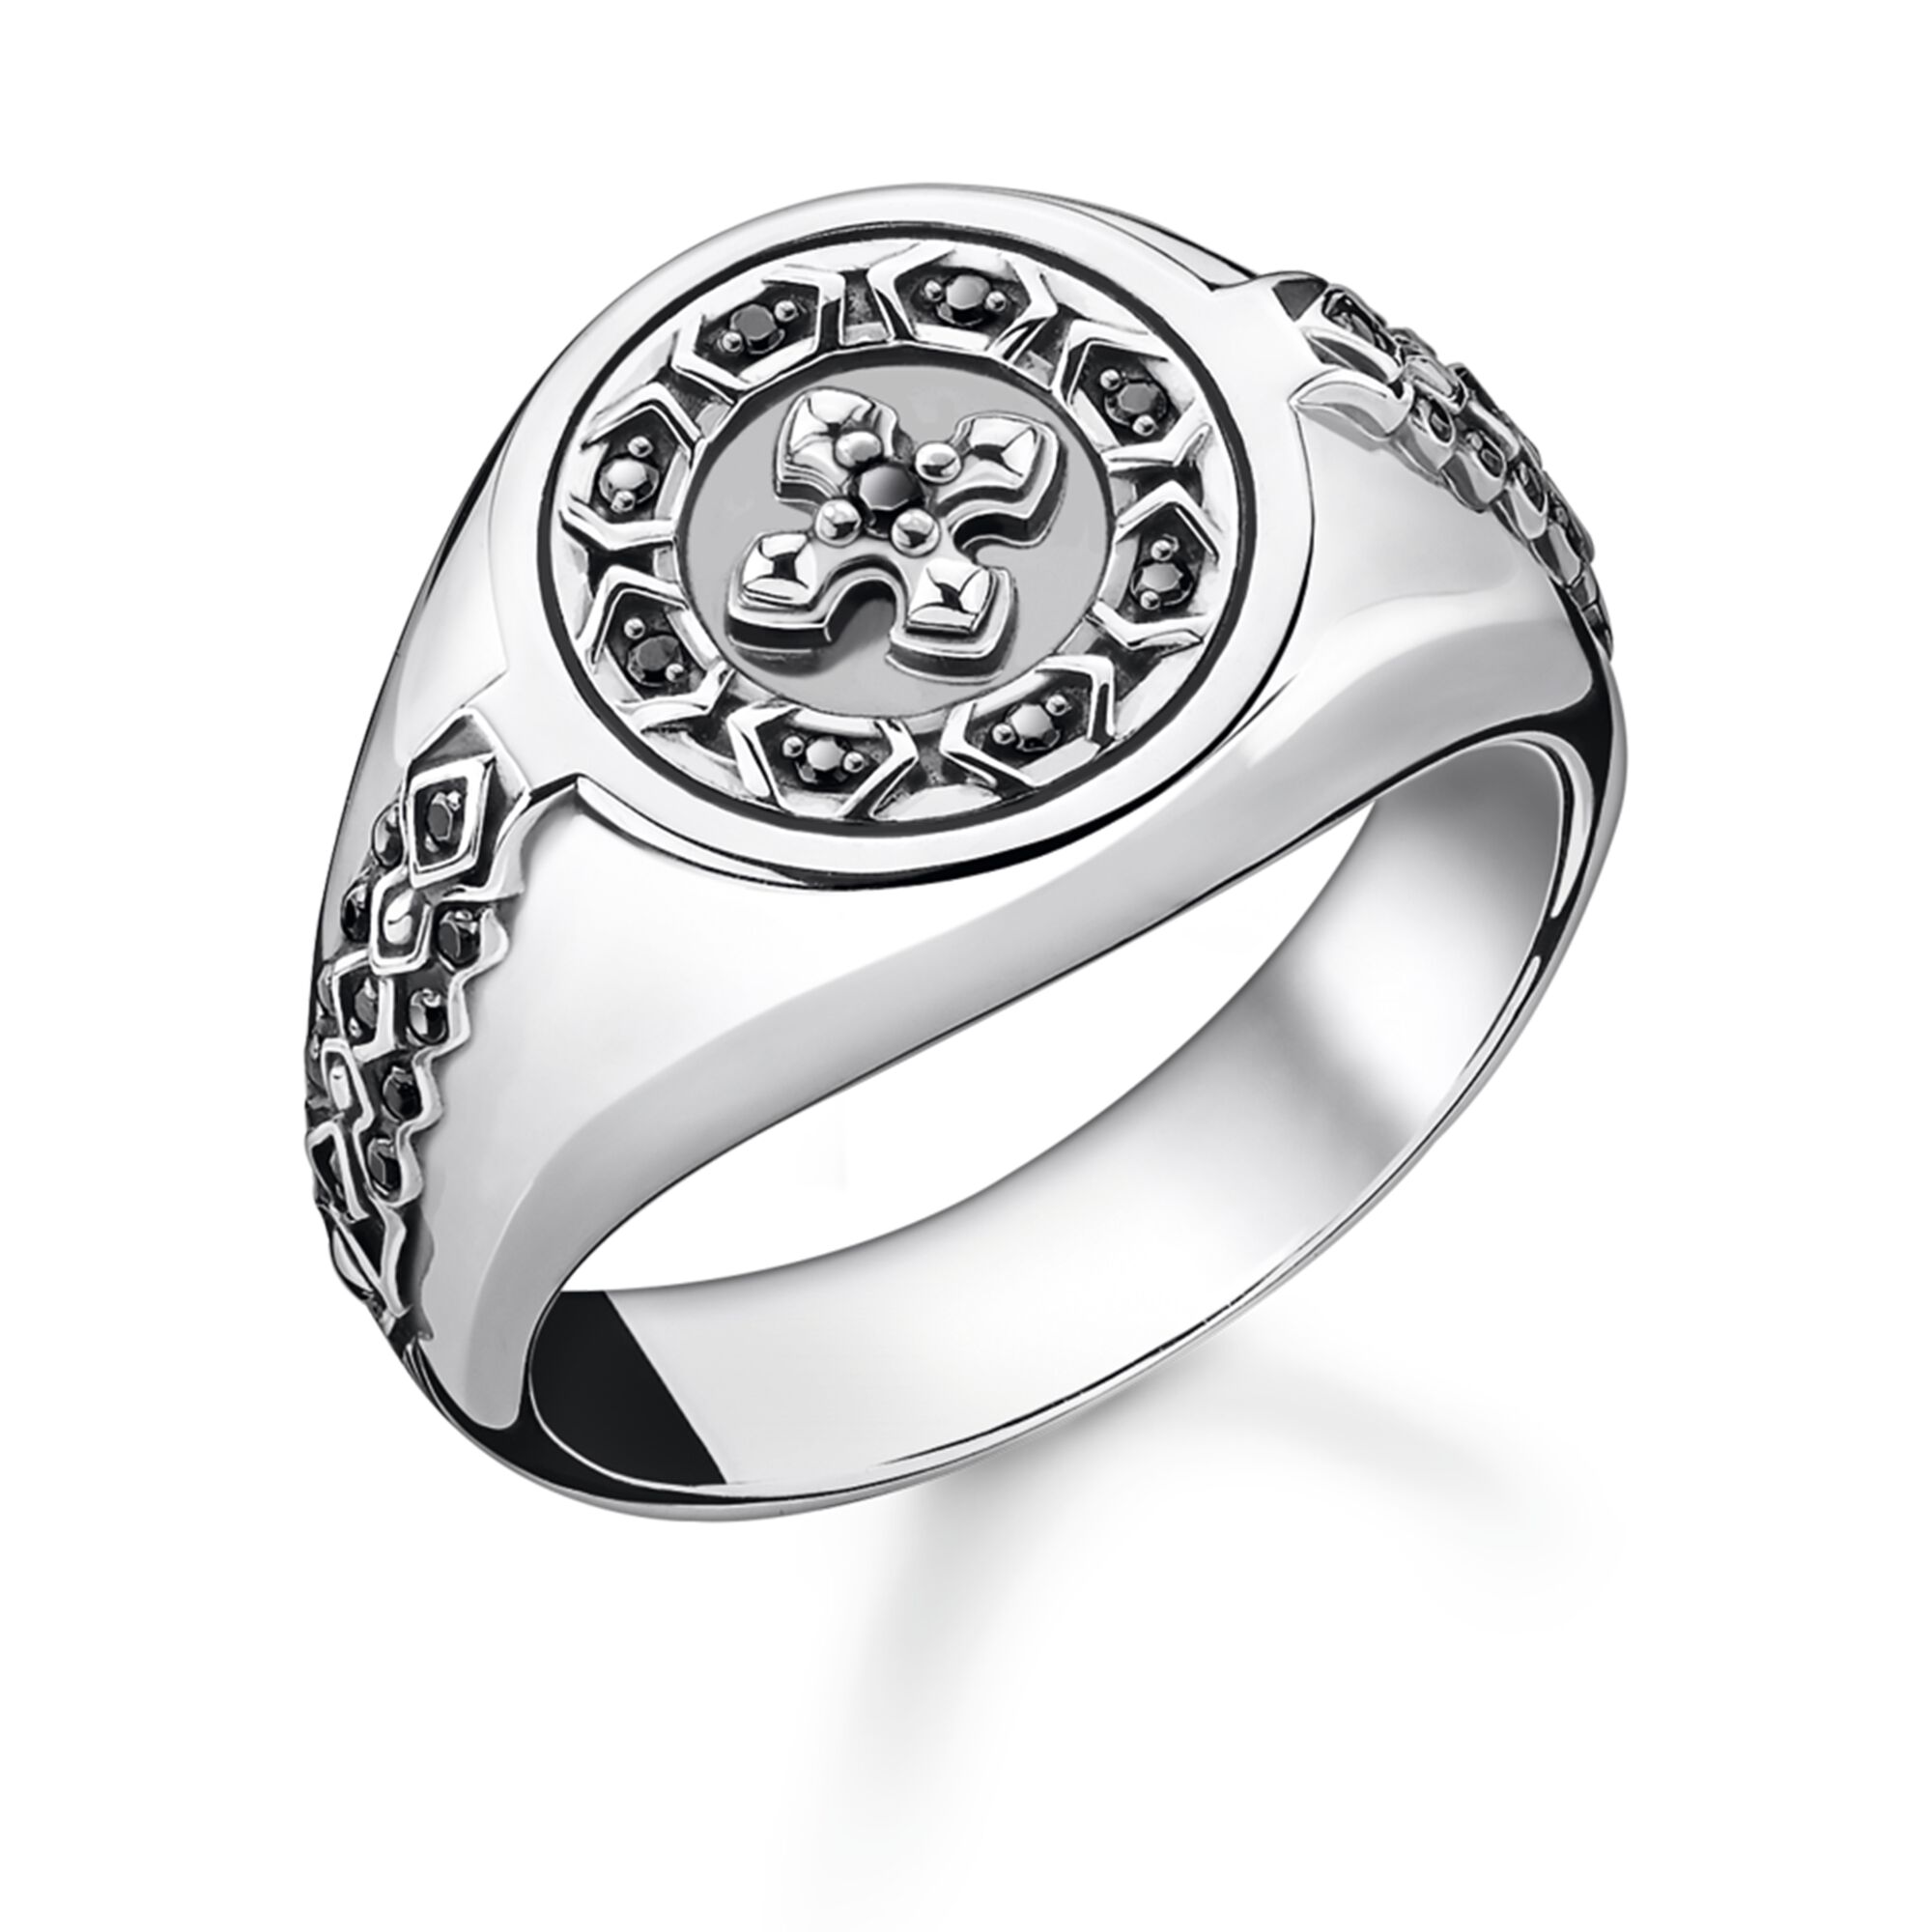 Fáinne Jewelry OEM/ODM mórdhíola na bhfear déanta as monaróir airgid Sterling dubhaithe 925